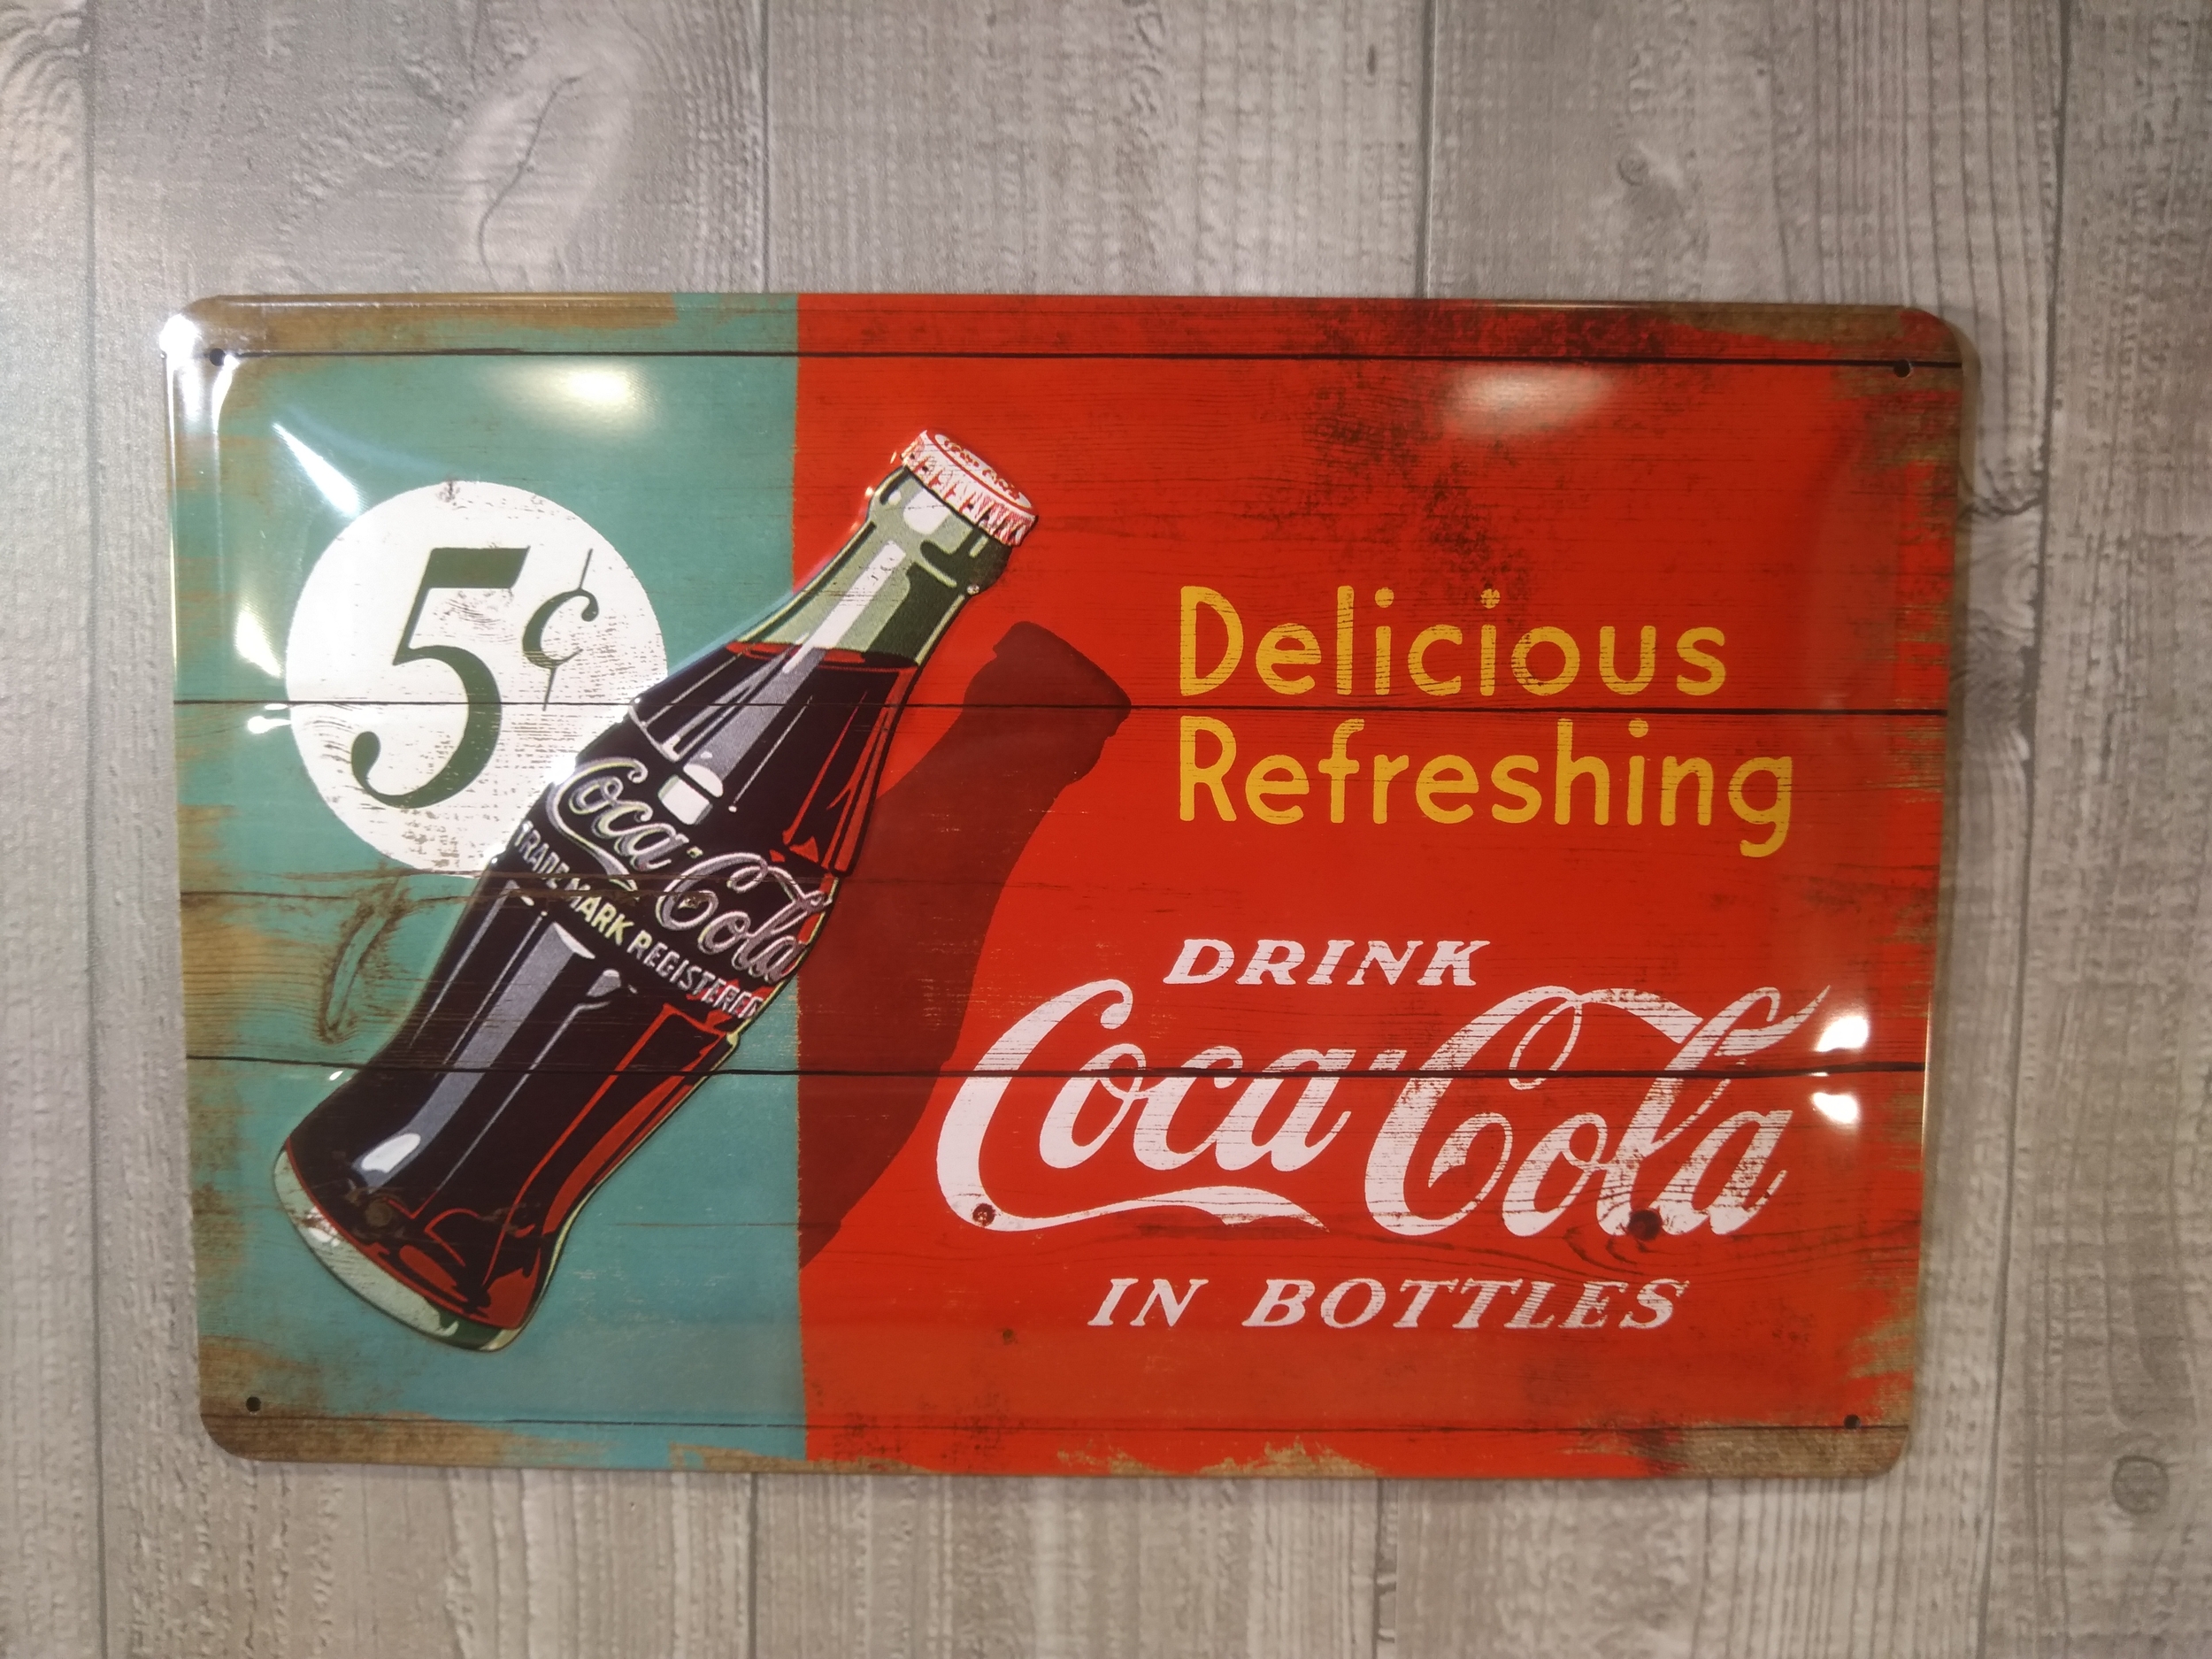 plaque métal déco publicitaire rétro vintage us coca-cola